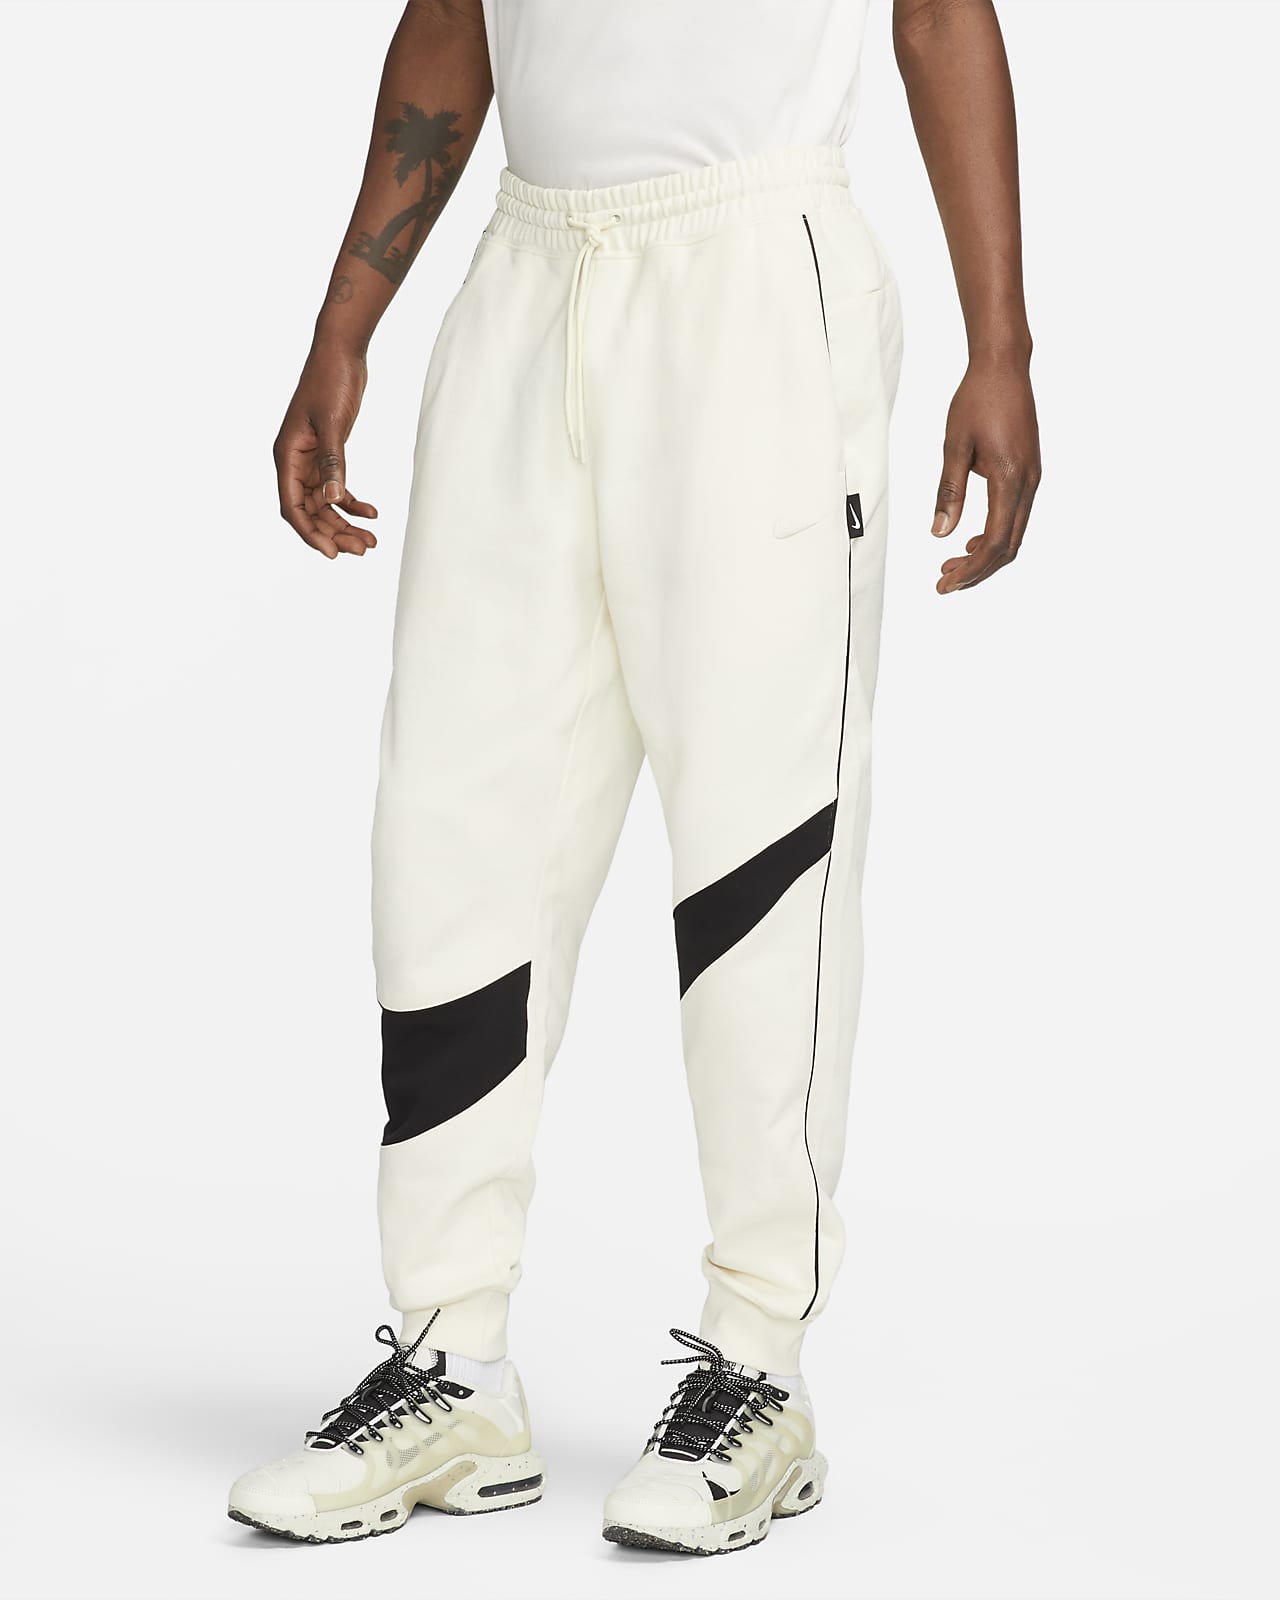 Nike Swoosh Men's Woven Pants (FB7881-010)